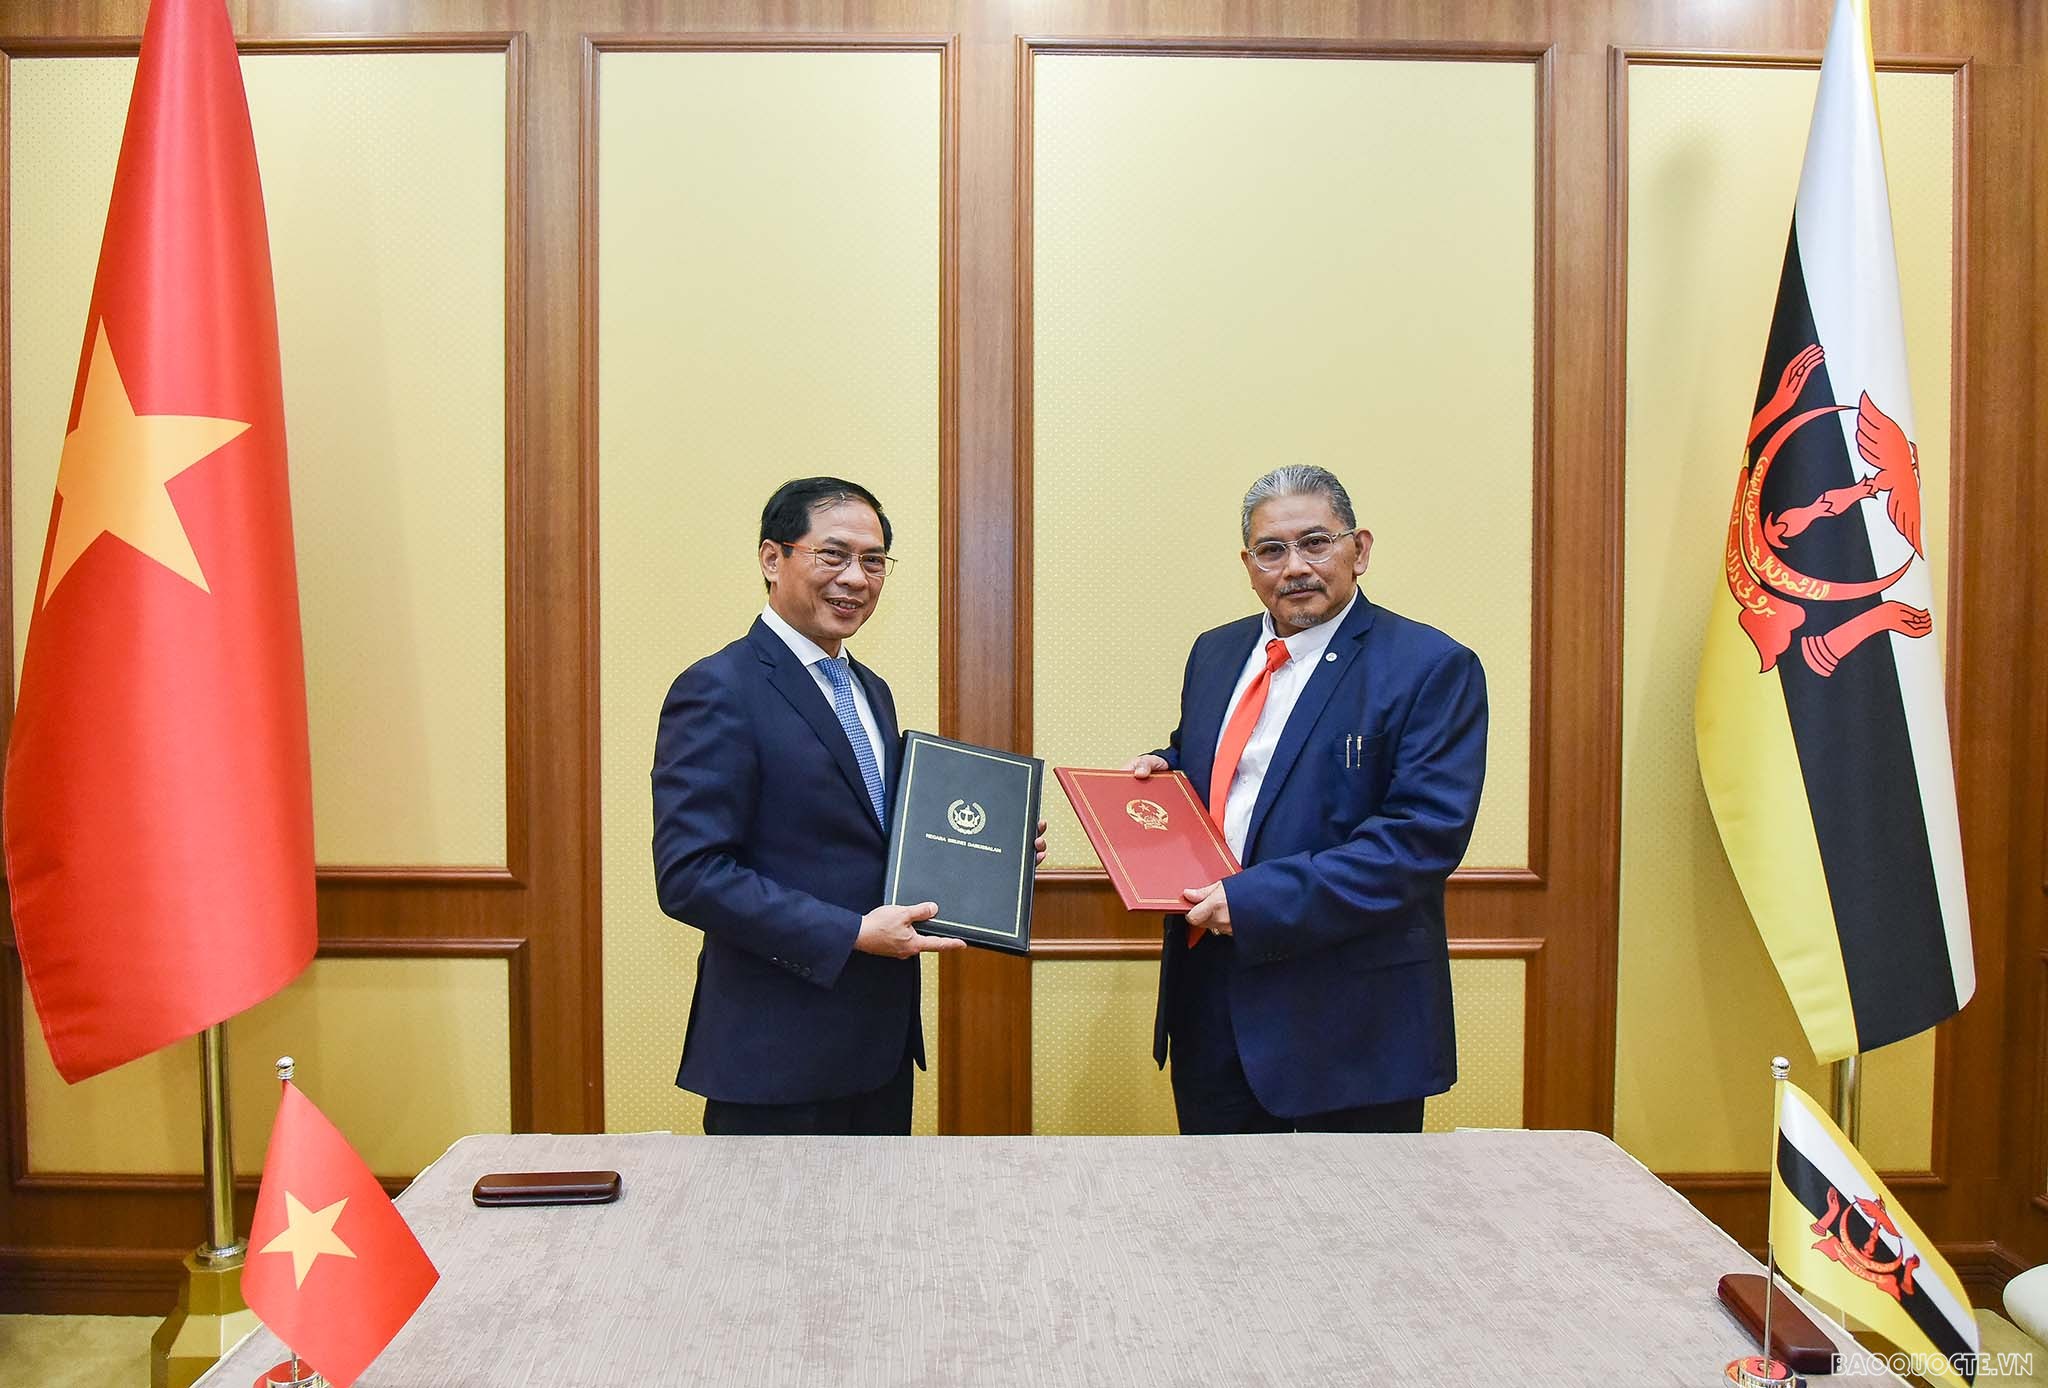 Bộ trưởng Ngoại giao Bùi Thanh Sơn đồng chủ trì Kỳ họp lần 2 Ủy ban hỗn hợp về Hợp tác song phương Việt Nam-Brunei